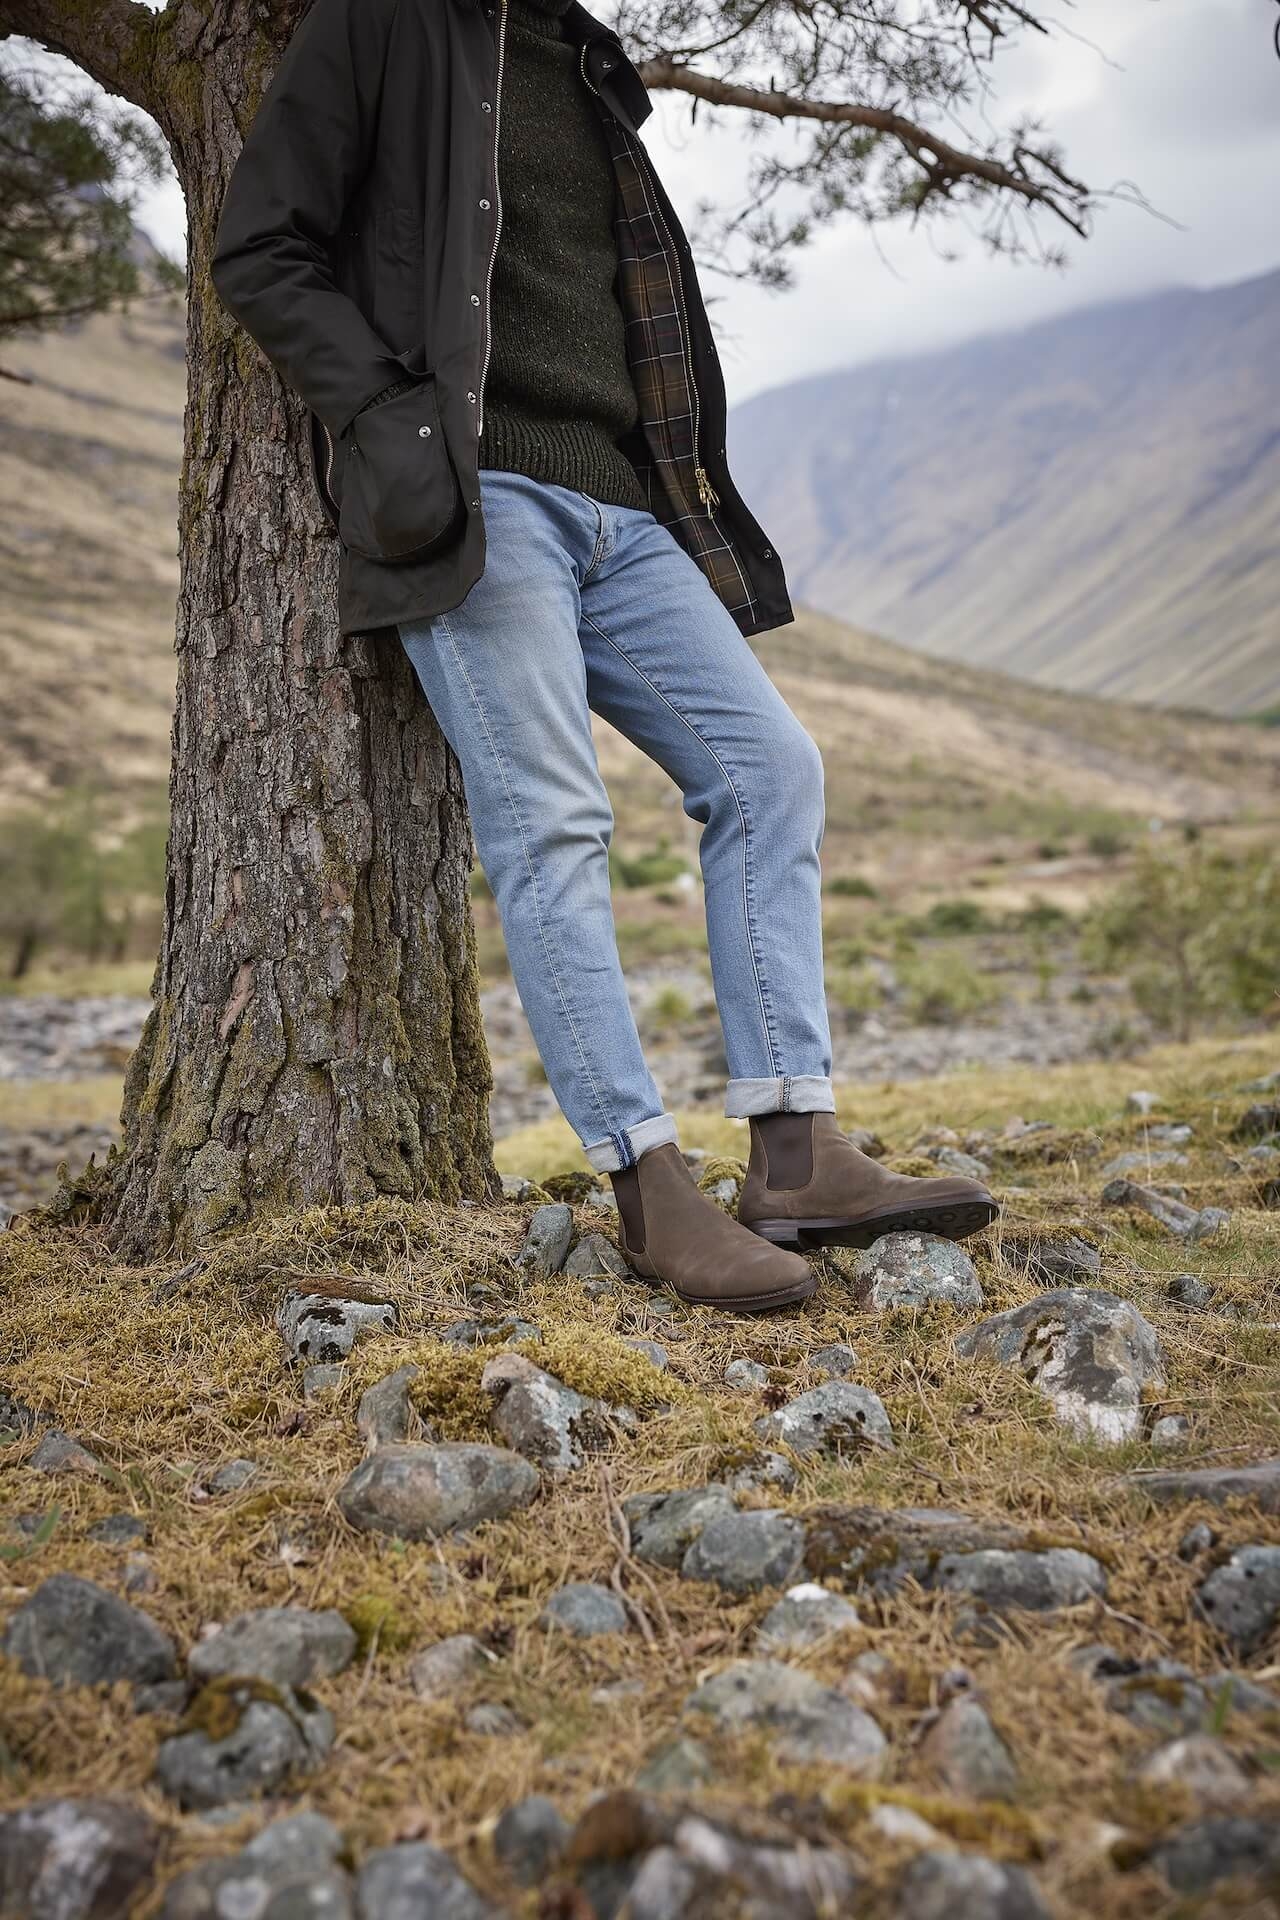 A man wearing Crockett & Jones boots leaning against a tree